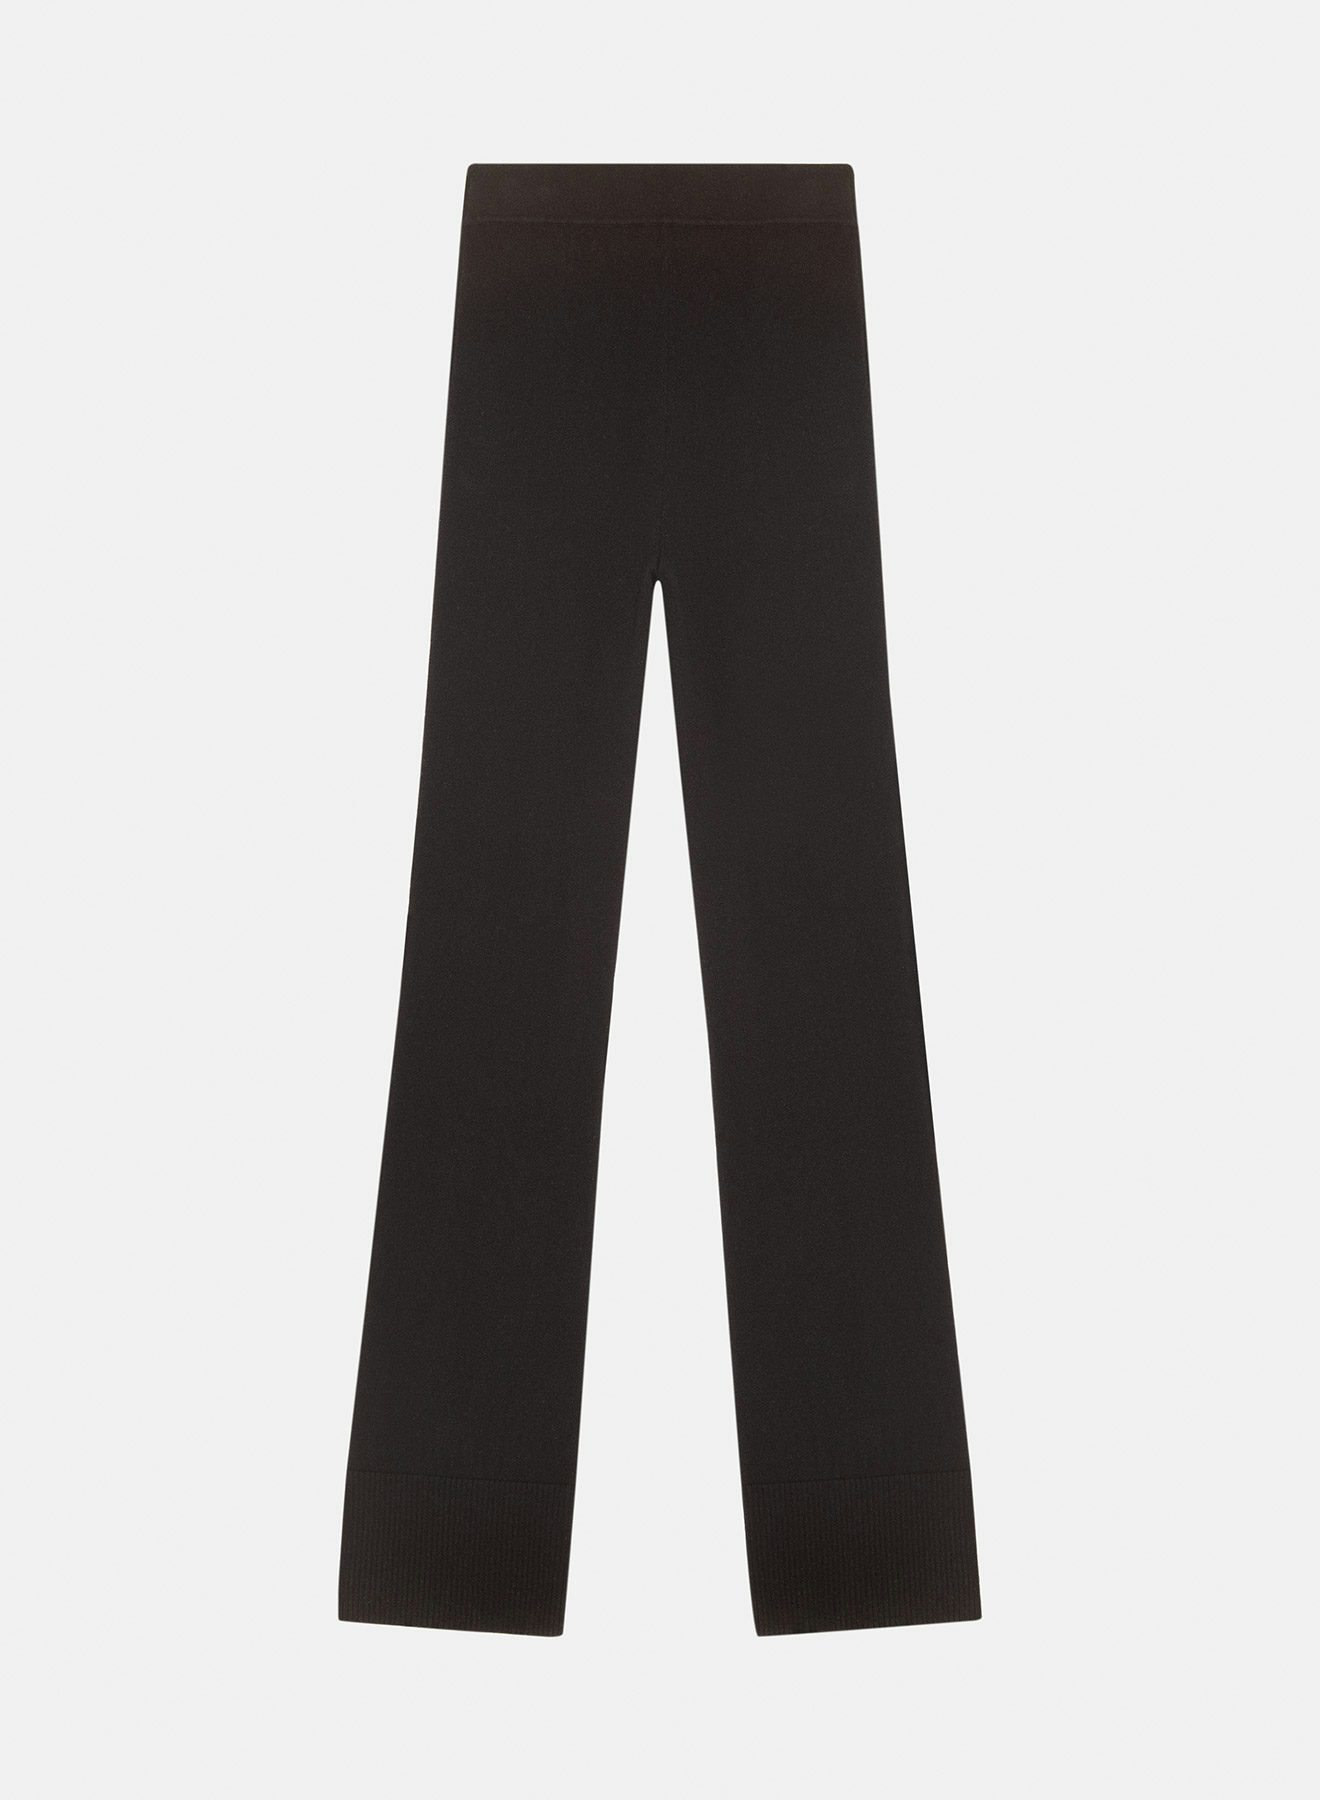 Intarsia cashmere pant black - Nina Ricci